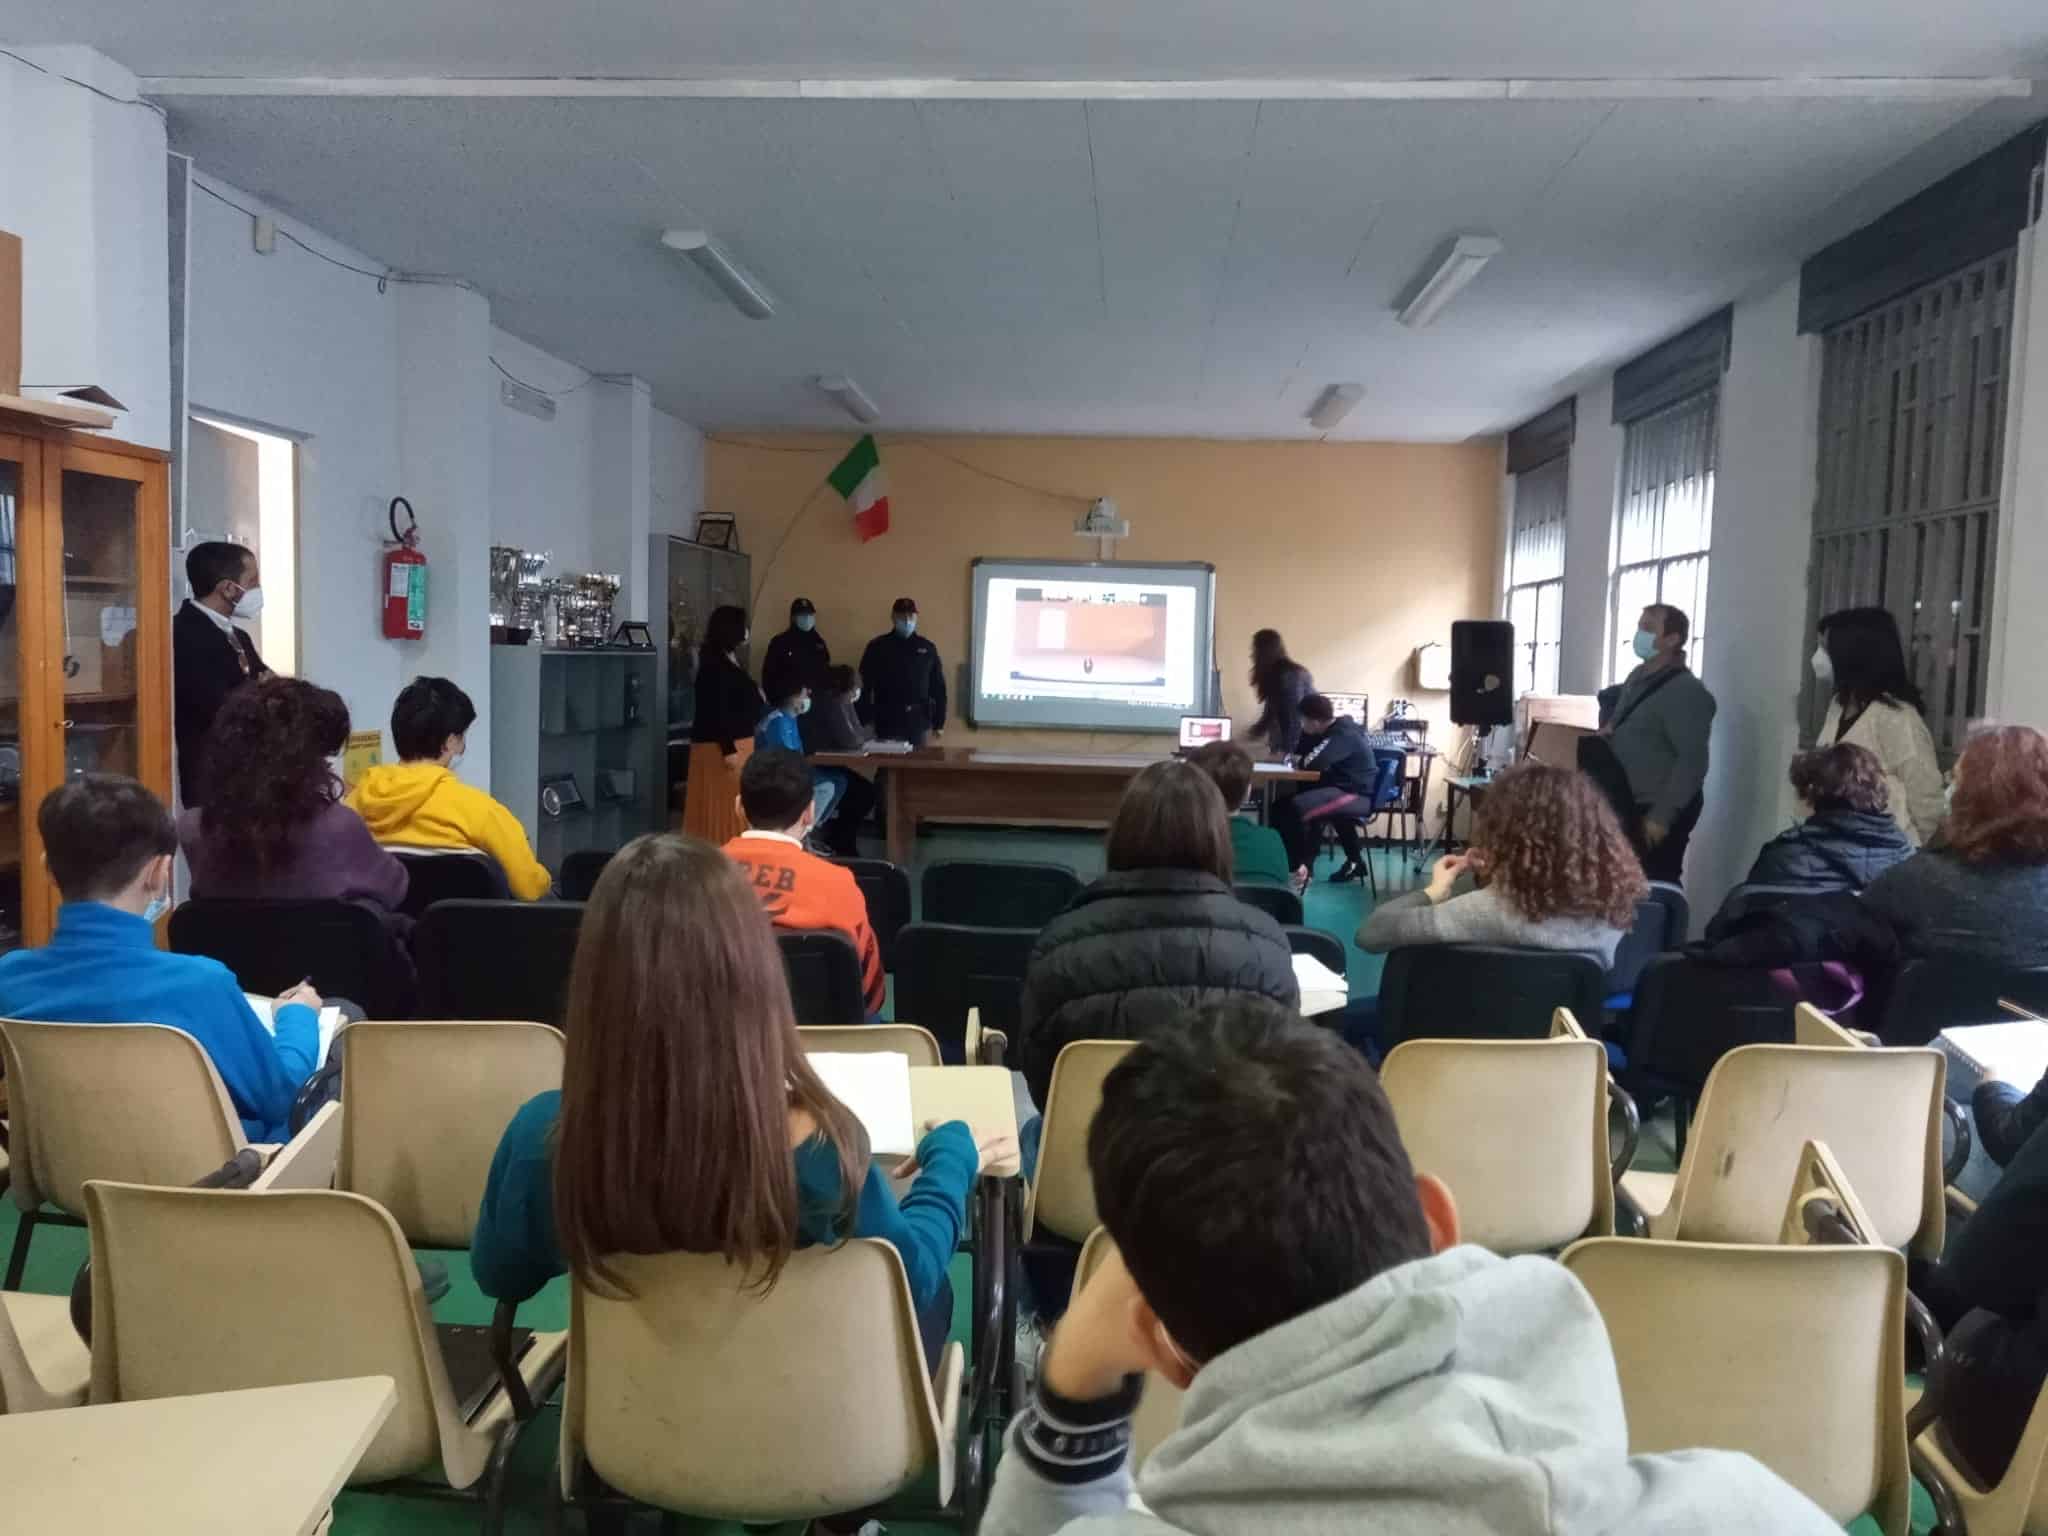 Catania, l’Istituto Omnicomprensivo “Pestalozzi” partecipa al “Safer Internet Day” col progetto #cuoriconnessi – FOTO, VIDEO e INTERVISTA alla Dirigente